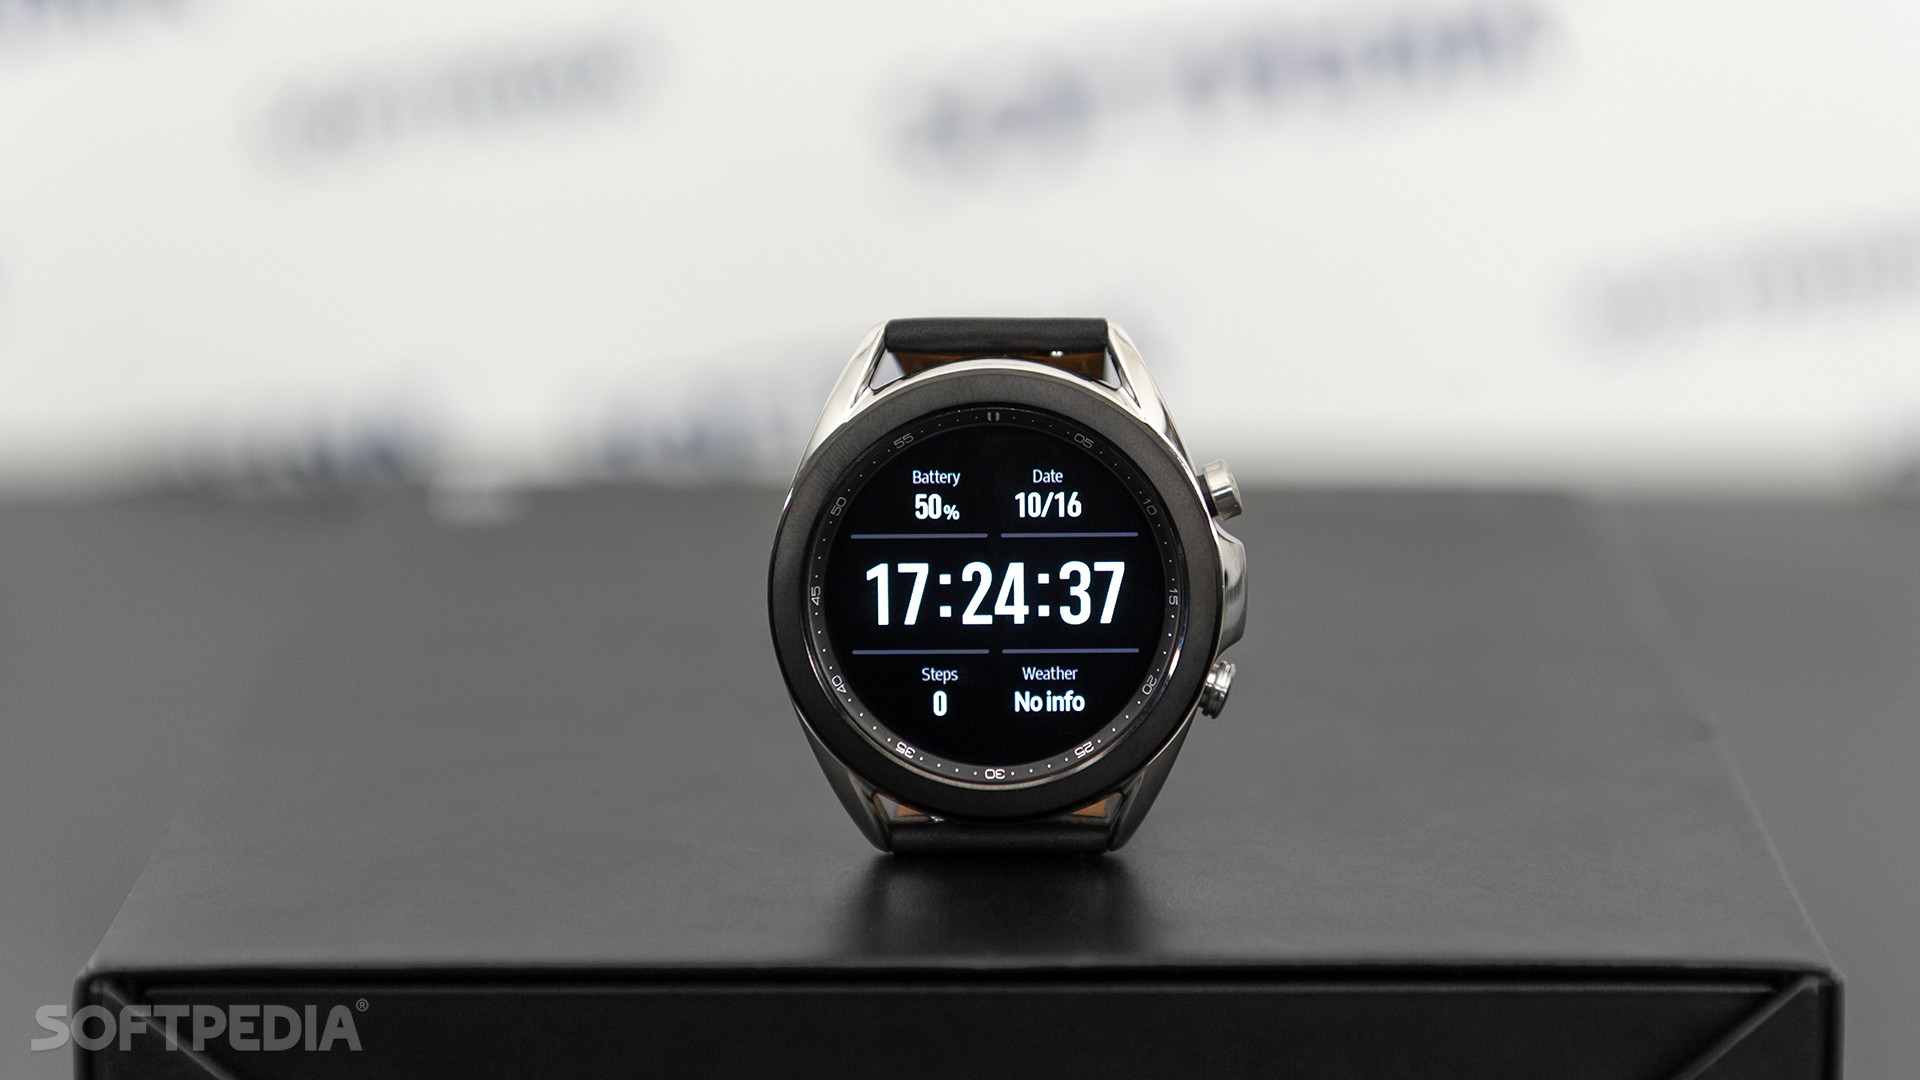 Samsung Galaxy Watch 3: Khám phá vẻ đẹp và tính năng tuyệt vời của Samsung Galaxy Watch 3 - một chiếc đồng hồ thông minh hoàn hảo cho những ai yêu thích công nghệ. Với thiết kế sang trọng và đầy cá tính, Galaxy Watch 3 sẽ là trợ thủ đắc lực giúp bạn luôn cập nhật được tất cả những thông báo và chức năng tiện ích mà bạn cần.